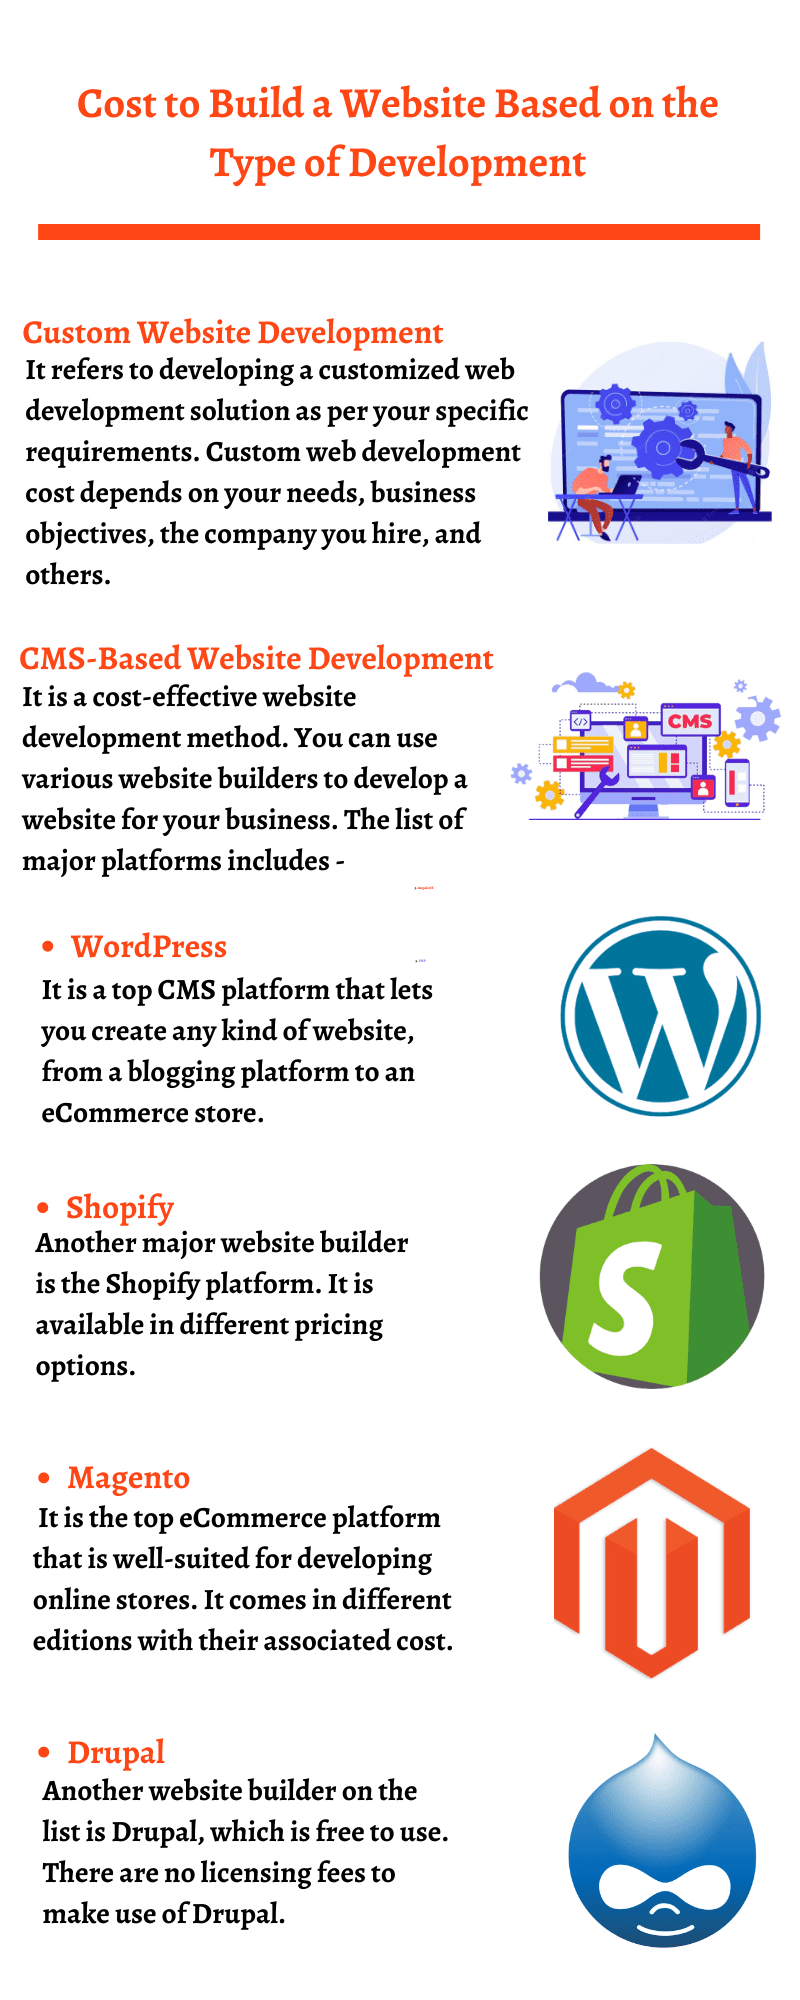 Website Development Cost